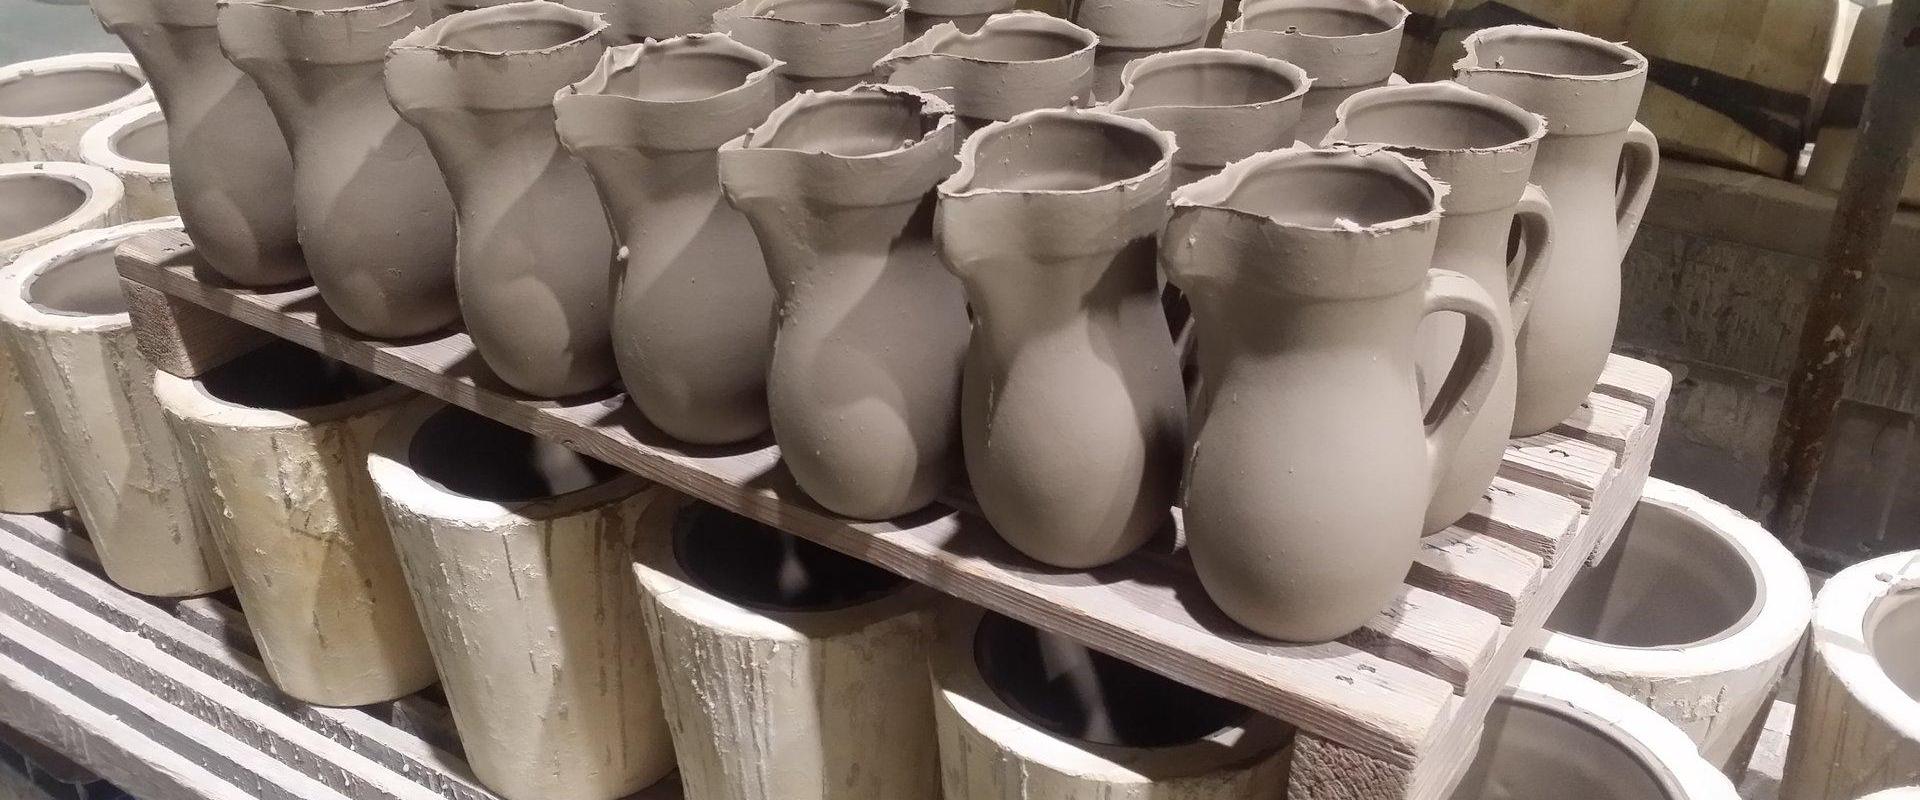 handmade-estonian-ceramics-creamjug-koorekann